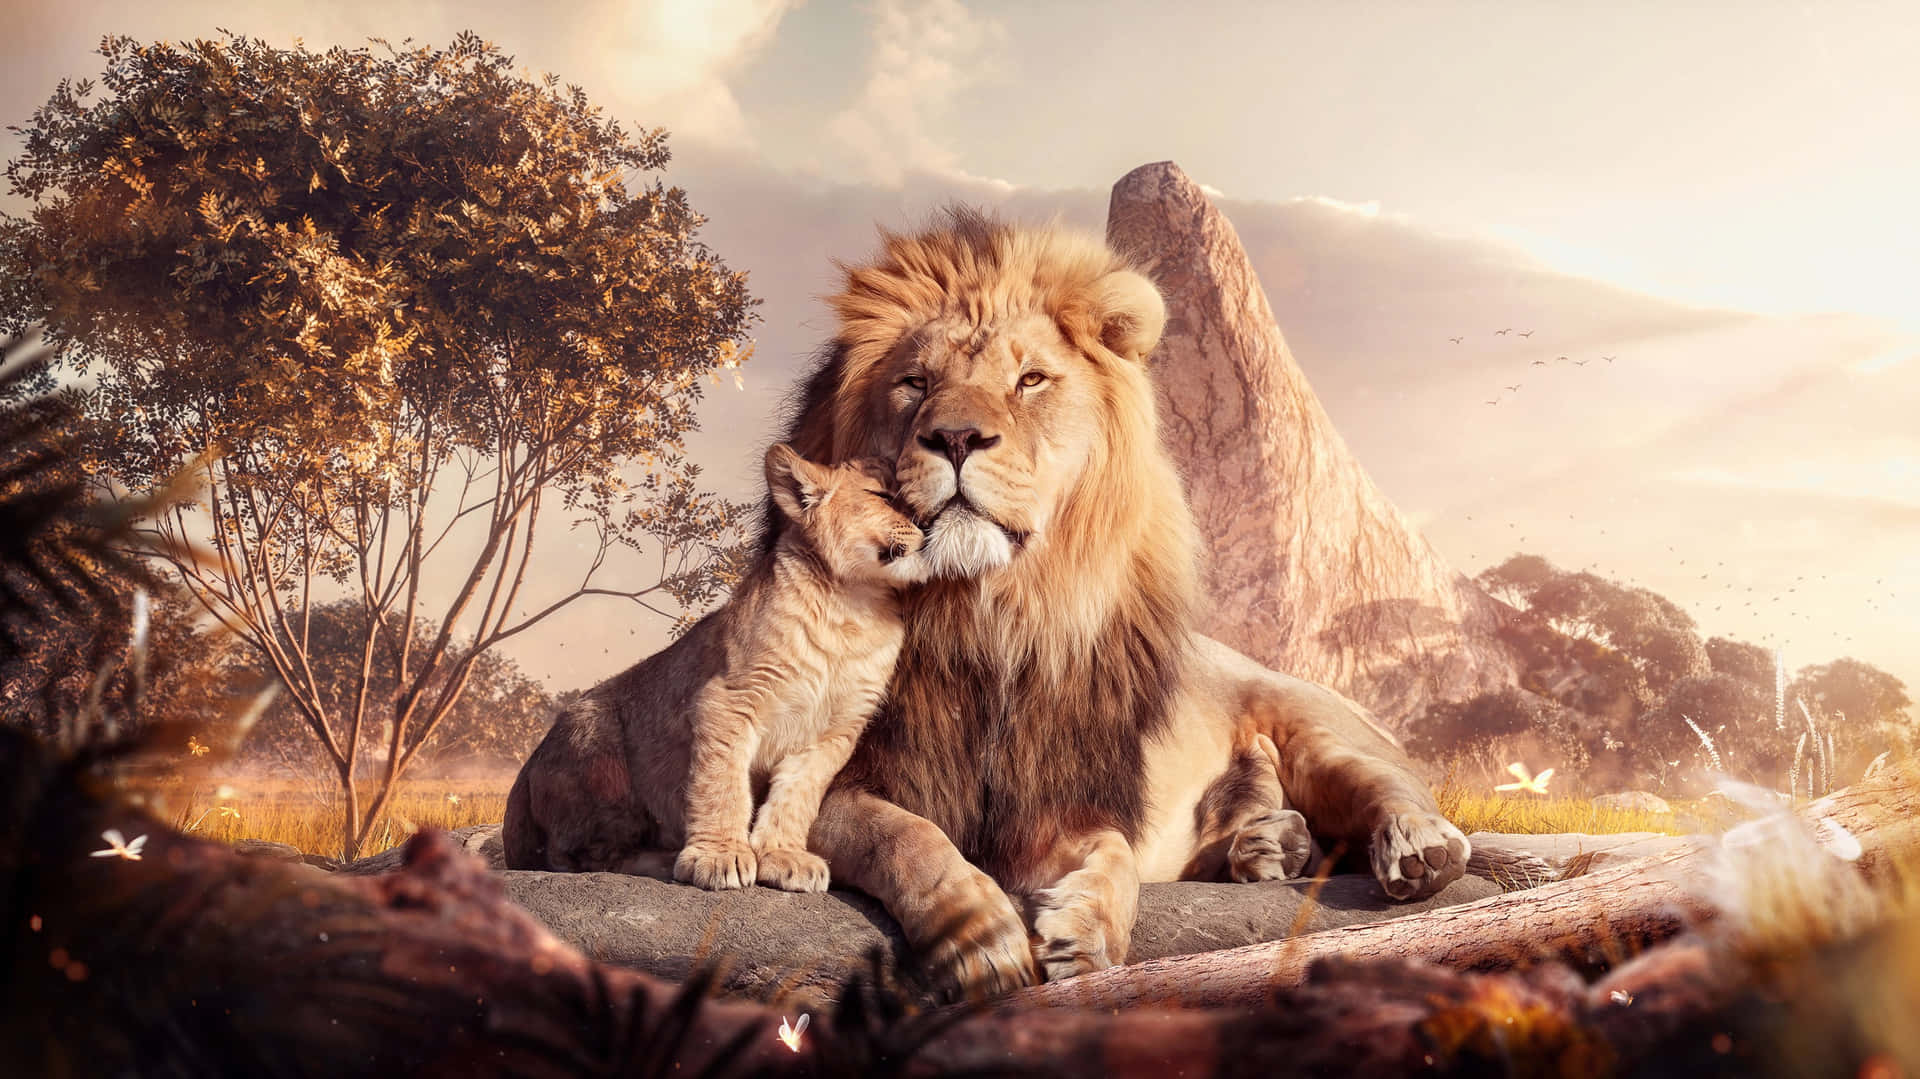 3dbild Von Mufasa Und Simba Aus Dem König Der Löwen